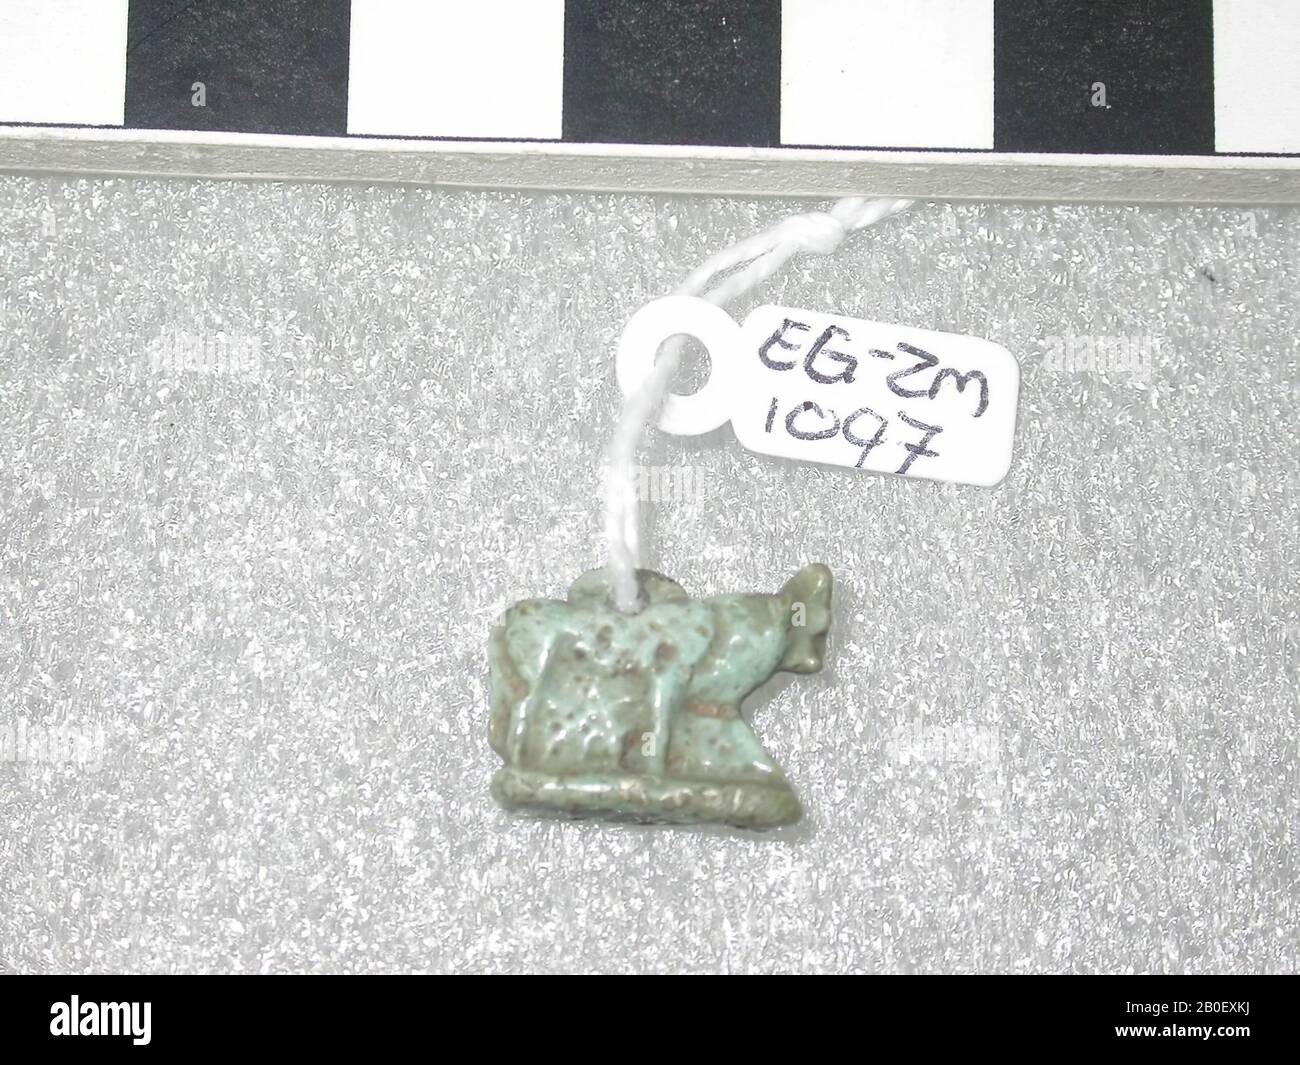 APIS bull, debout, amulet, animal, foi, longueur: 1,5 cm, Egypte Banque D'Images